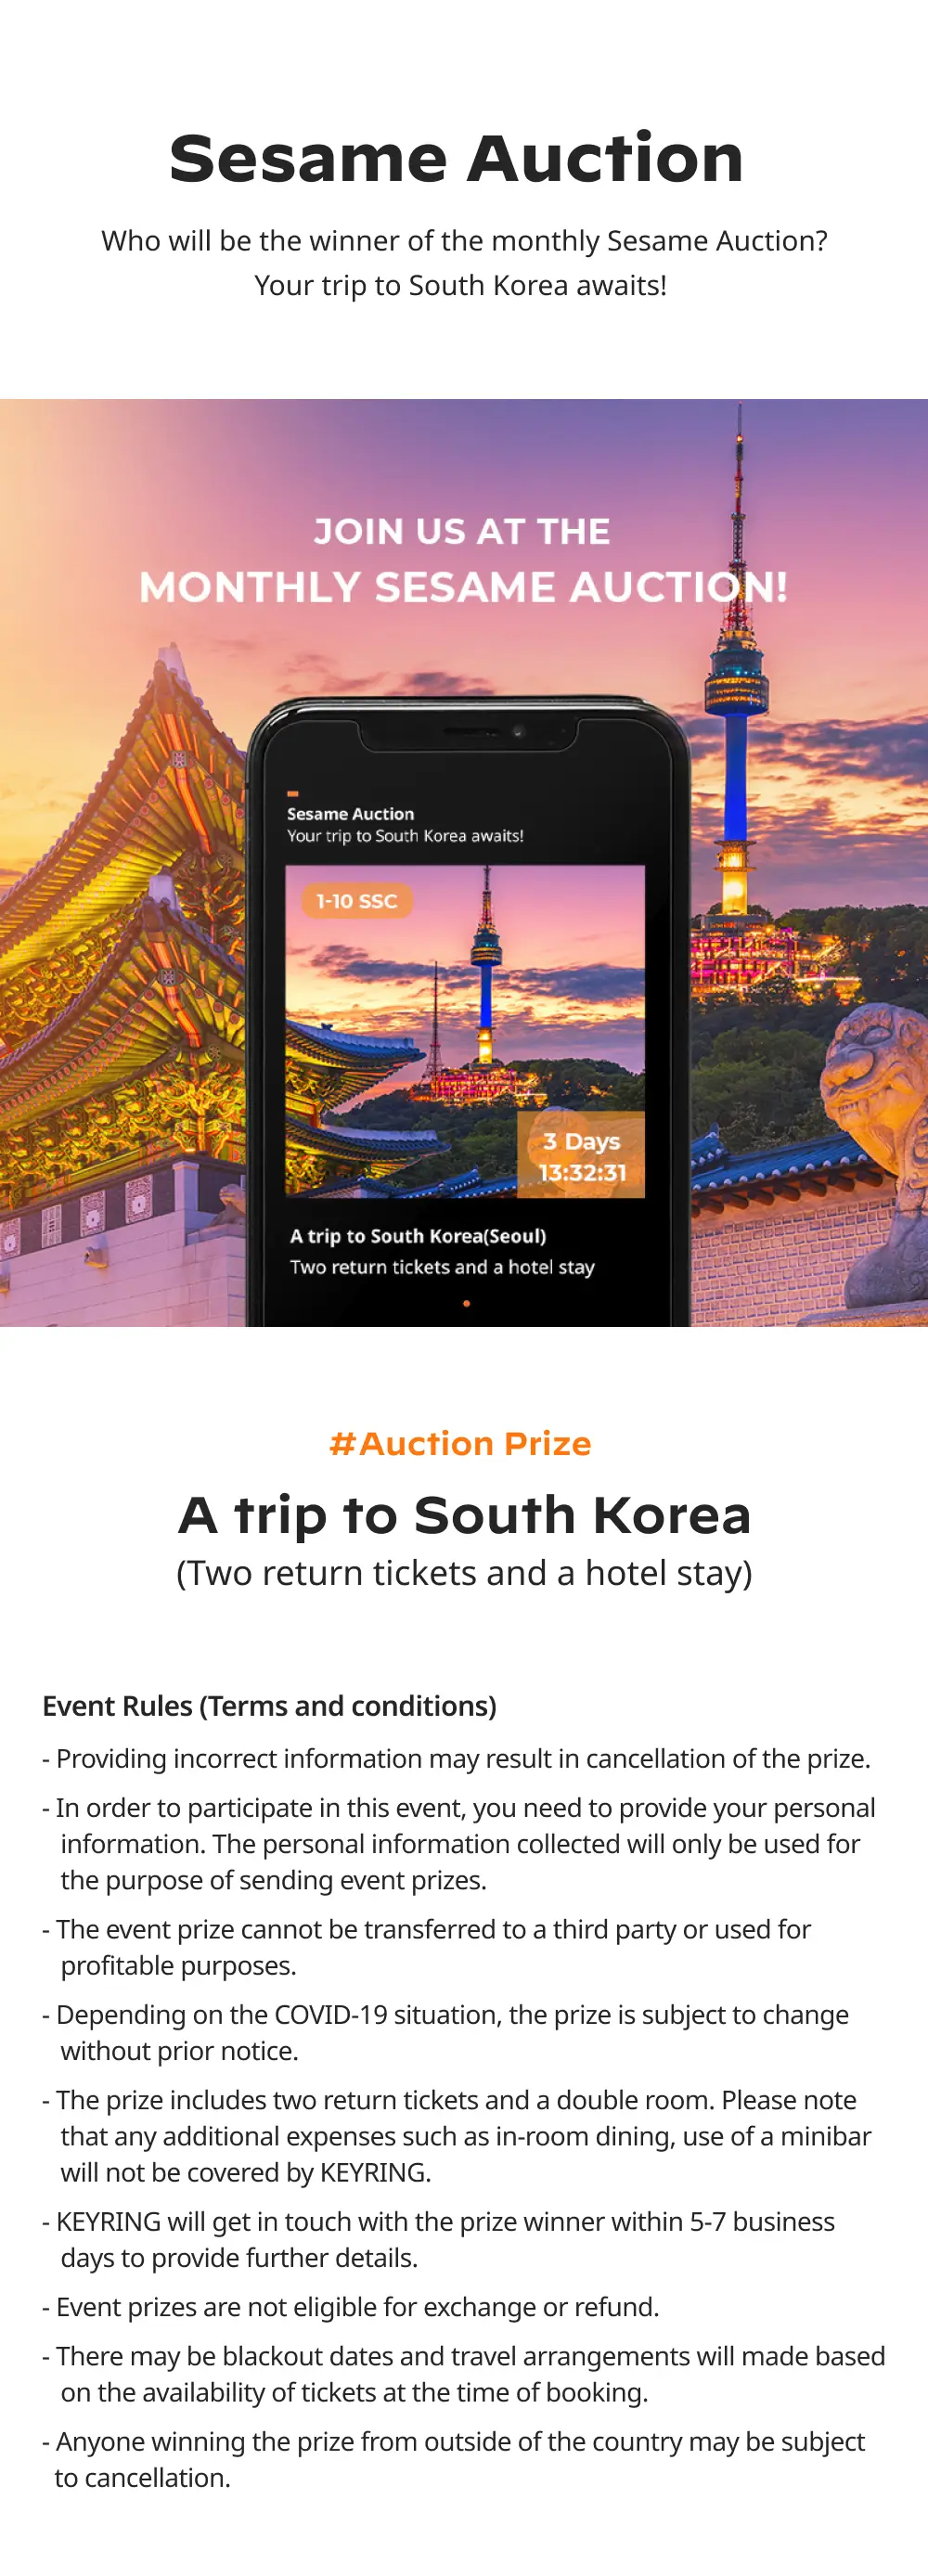 Singapore Sesame Auction Prize - Trip to South Korea